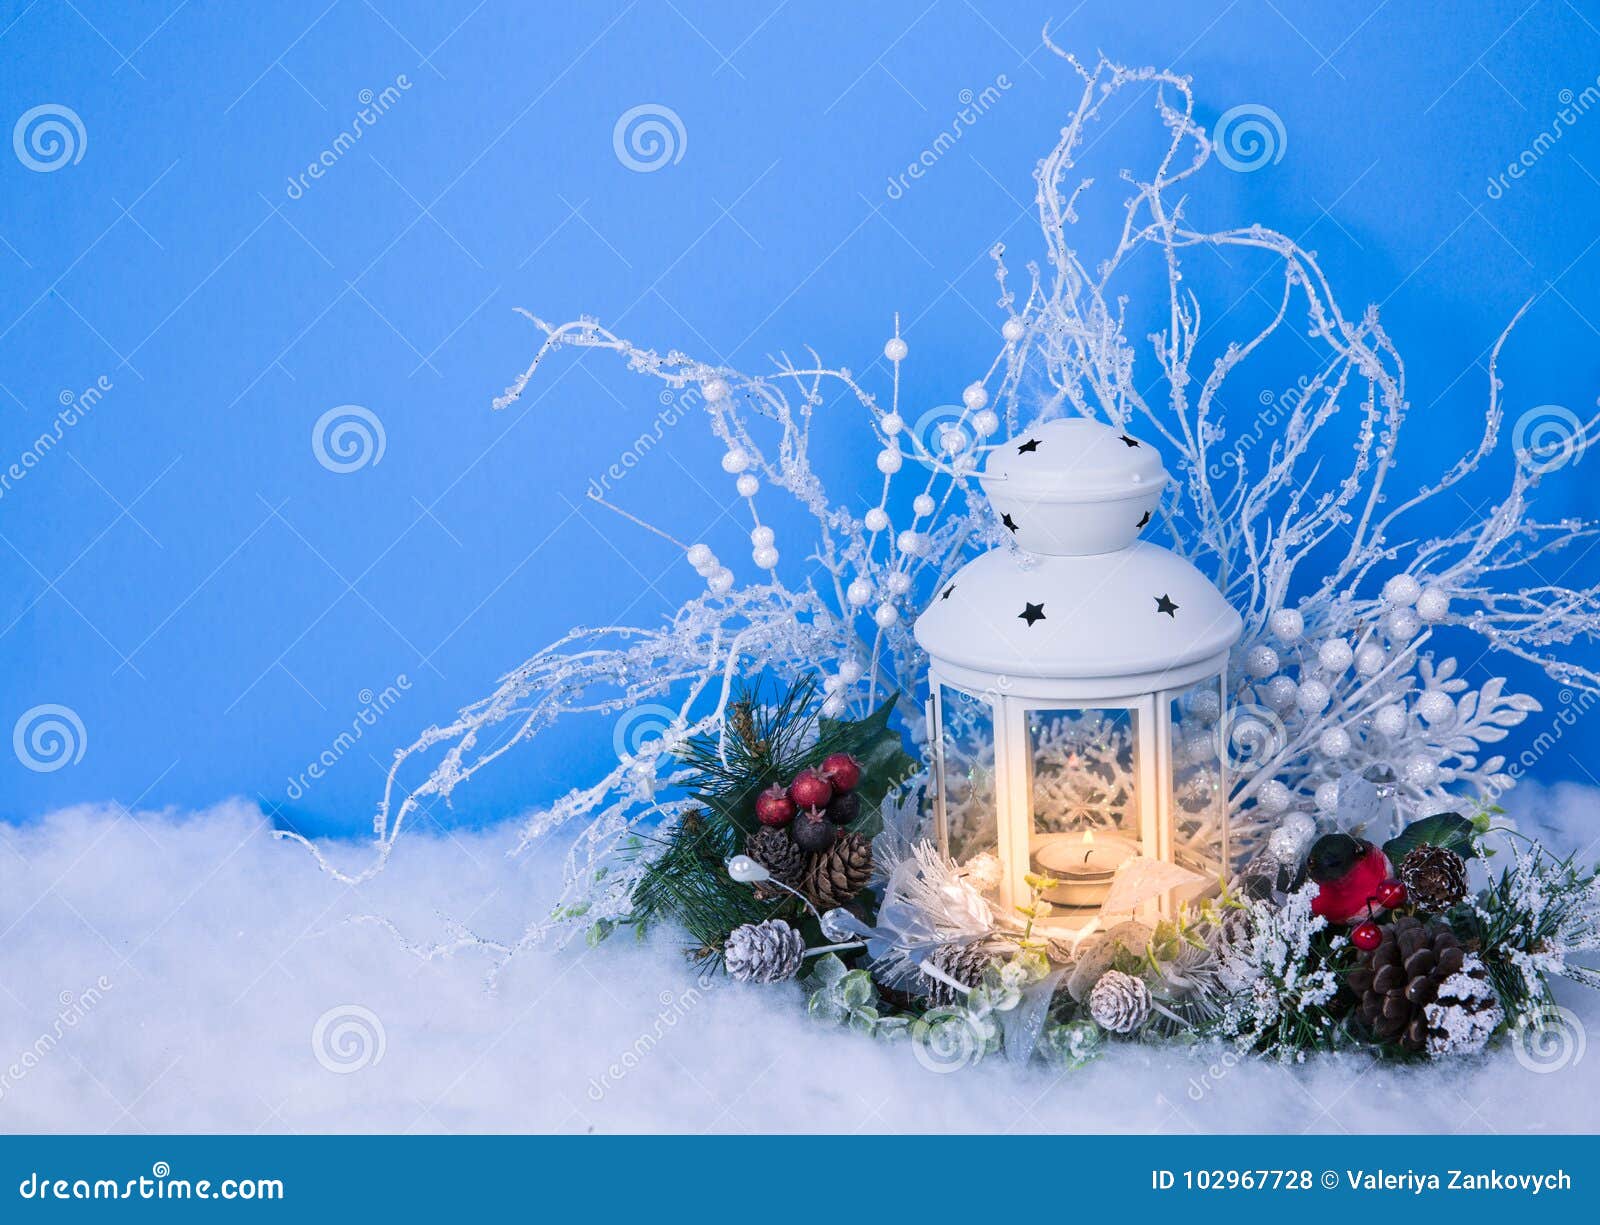 Sfondi Natalizi Lanterna.Lanterna Di Notte Di Natale E Fondo Delle Decorazioni Fotografia Stock Immagine Di Decorazione Gelido 102967728